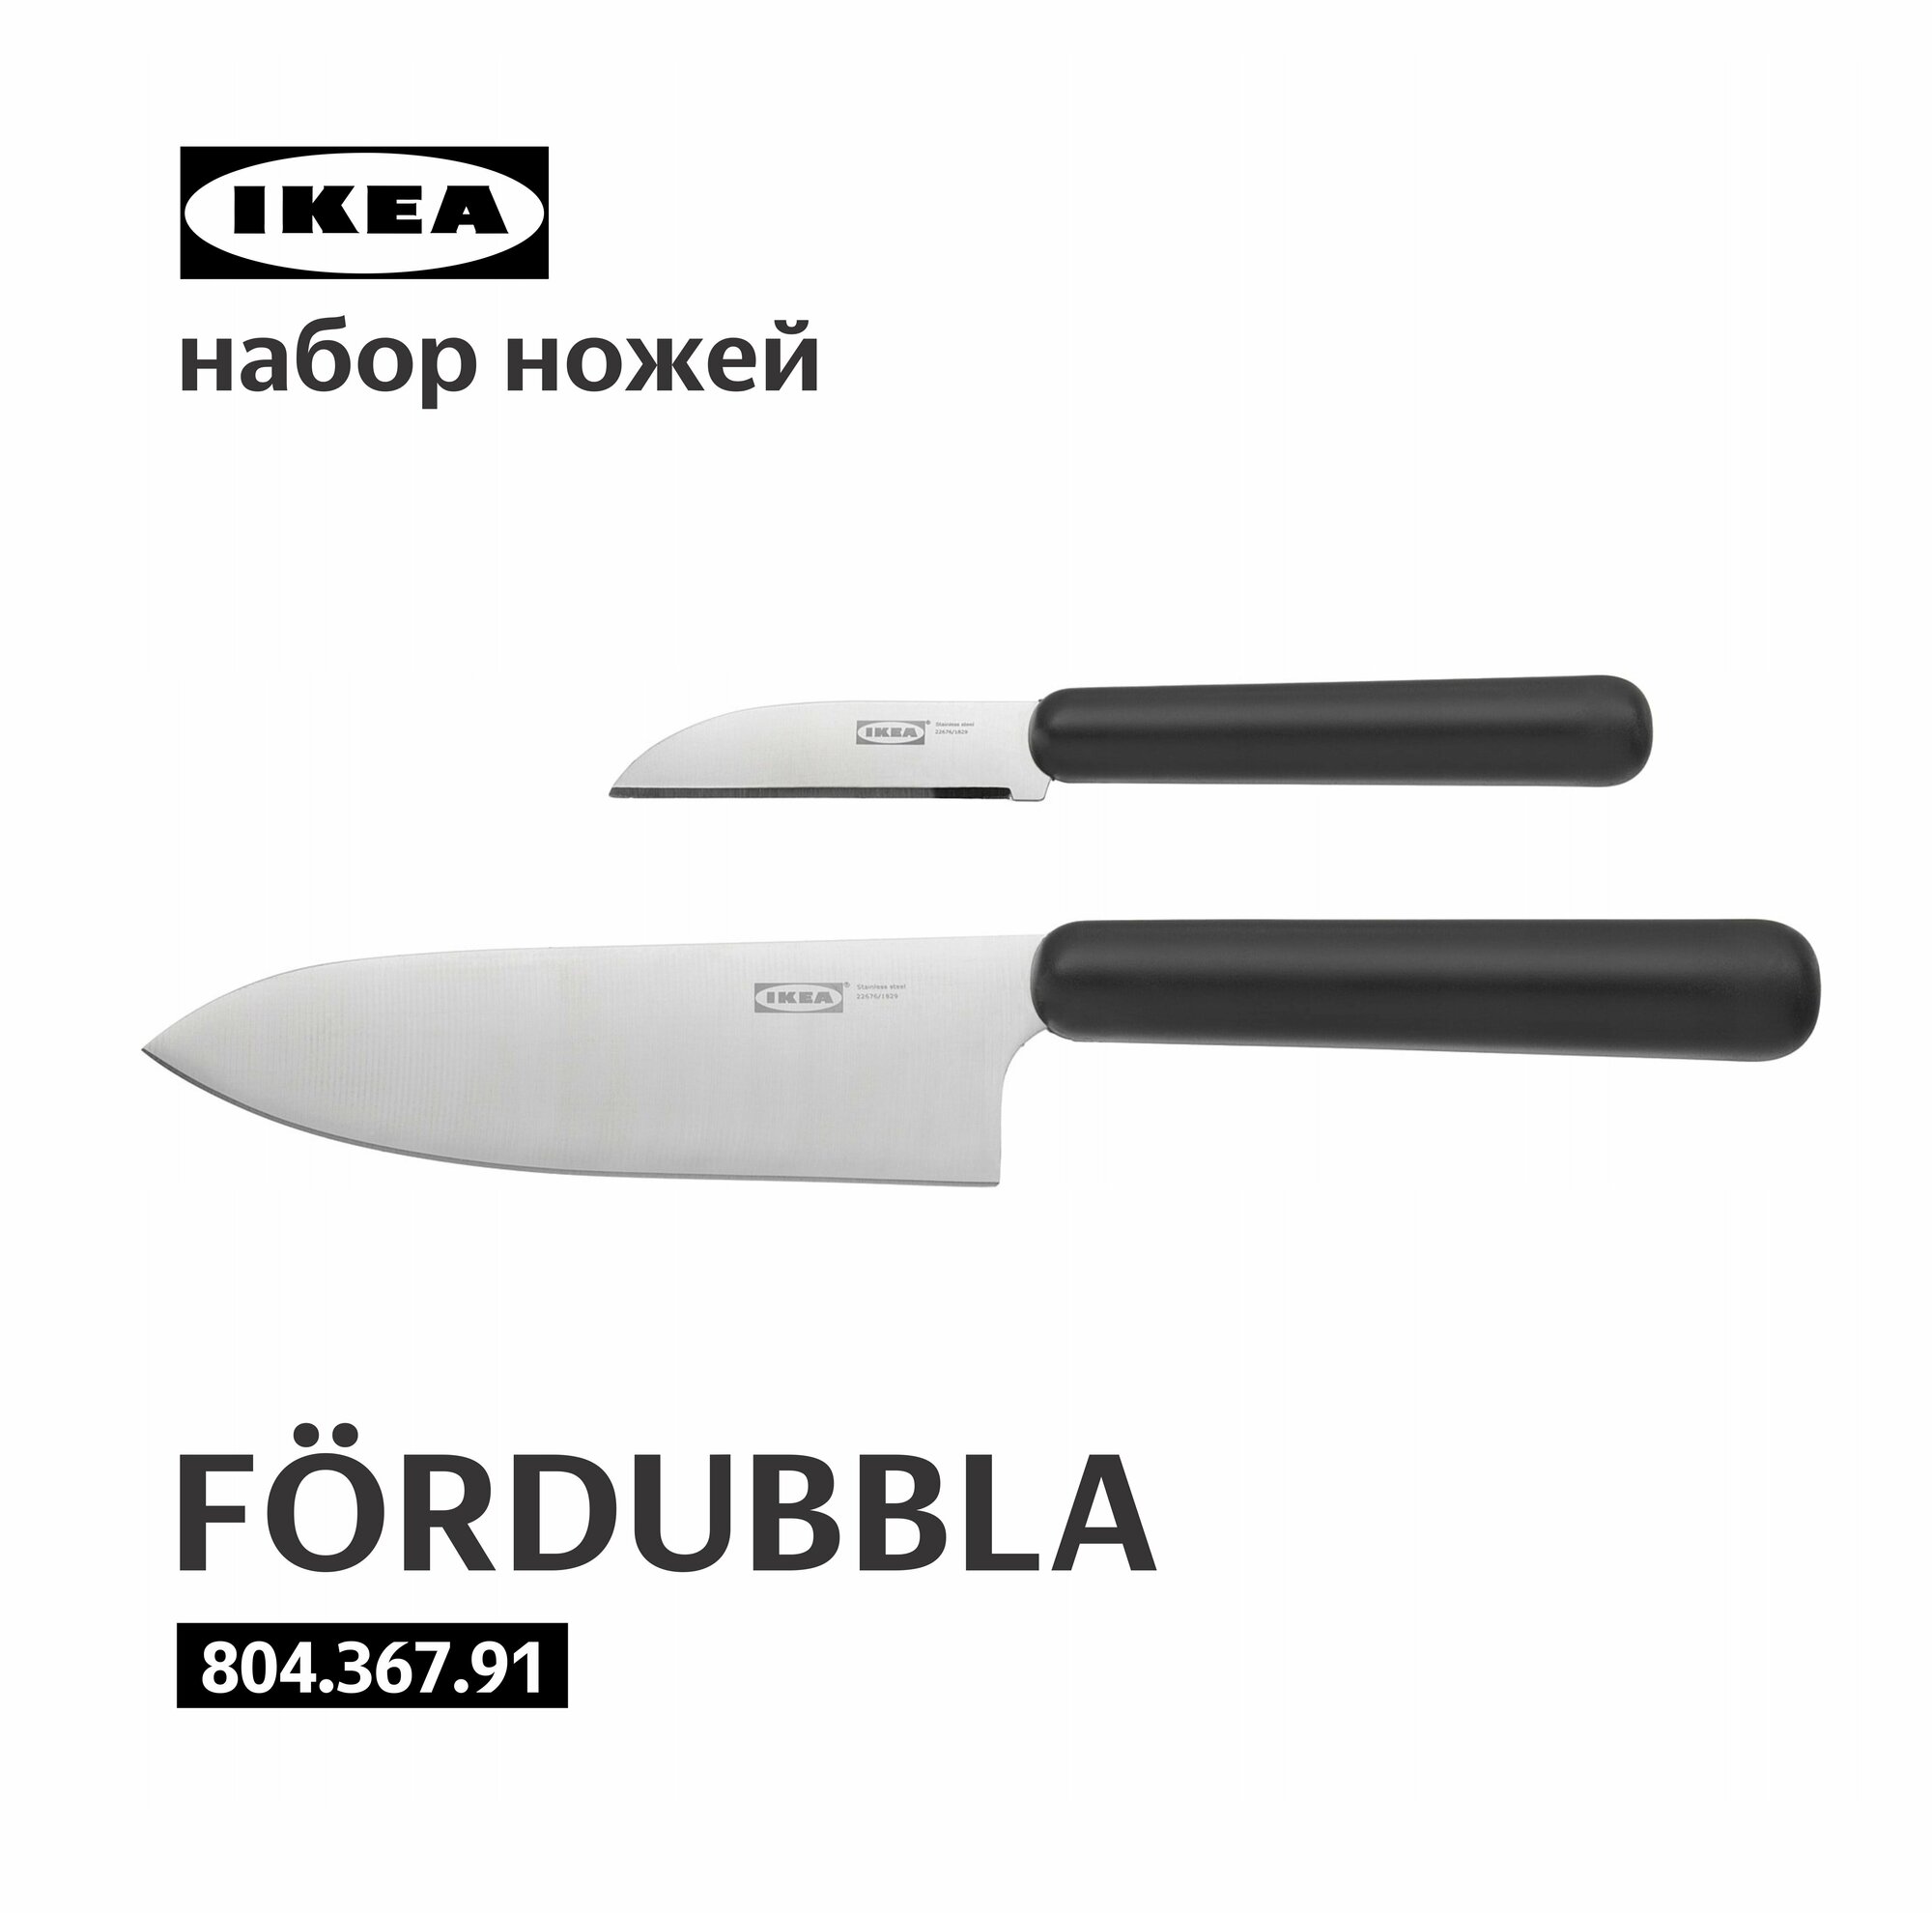 Ножи кухонные 2шт FÖRDUBBLA IKEA фордуббла икеа 804.367.91